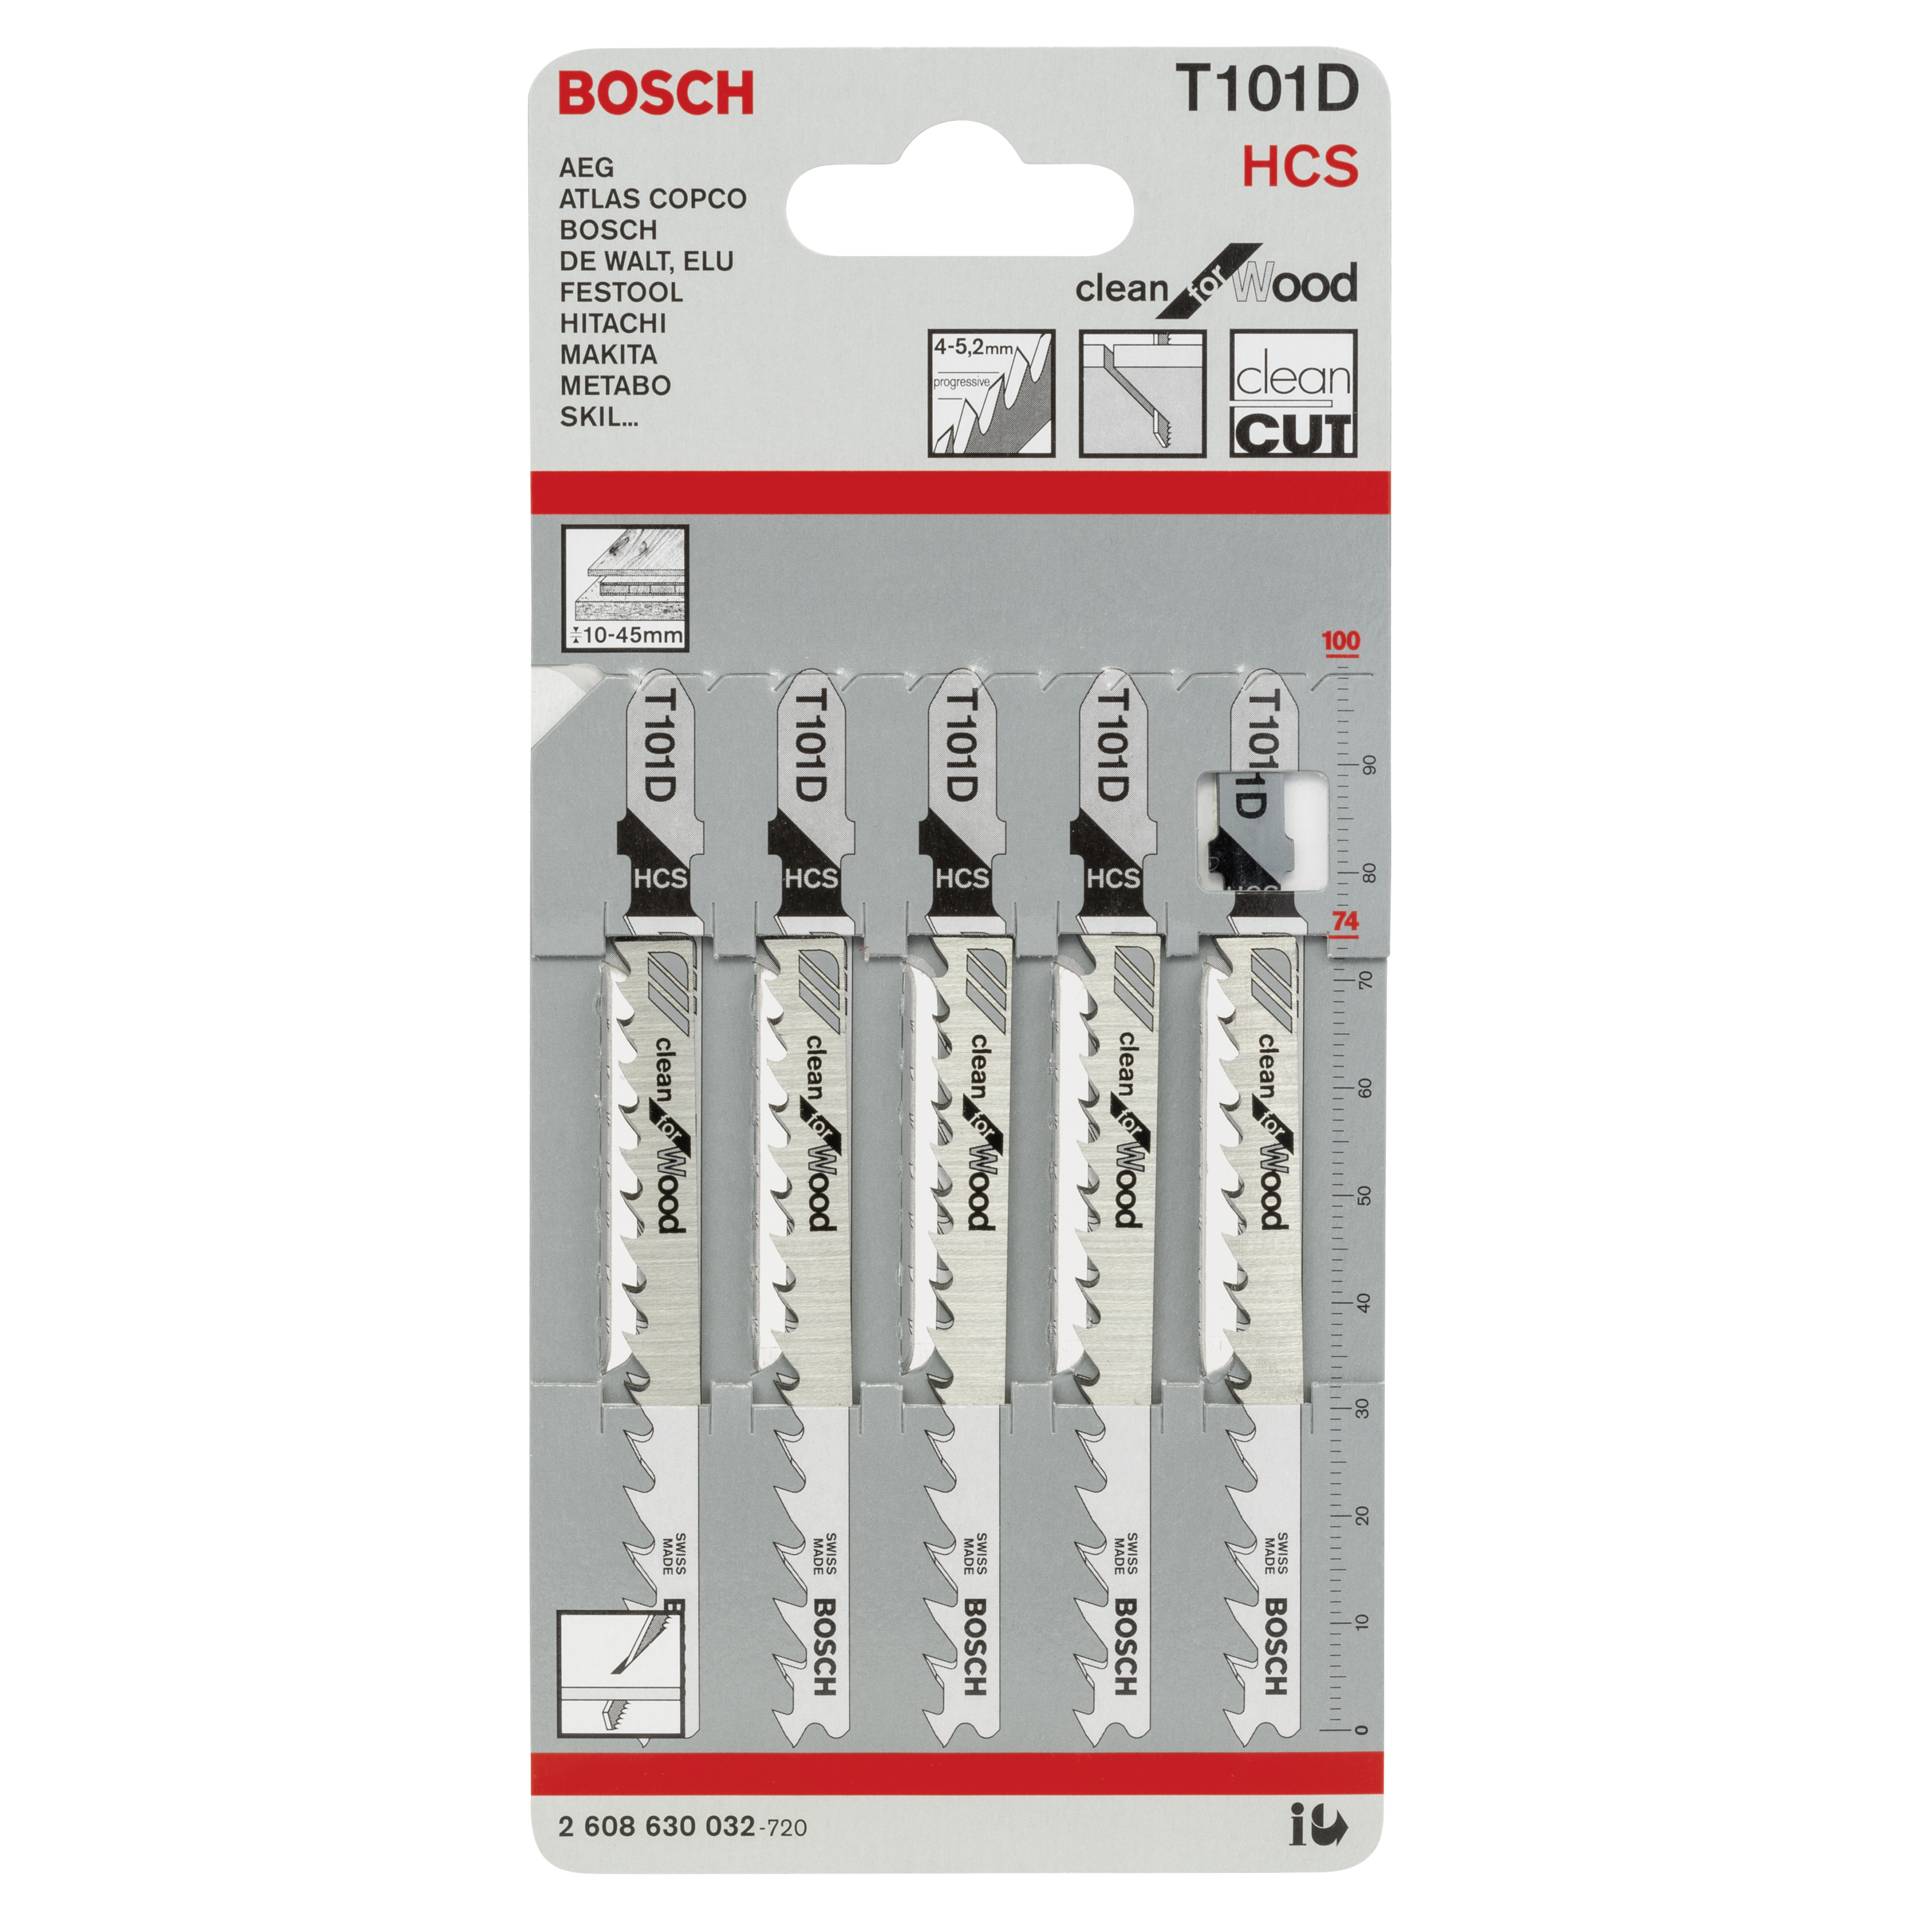 Bosch 5 Stichsägeblätter T 101 D